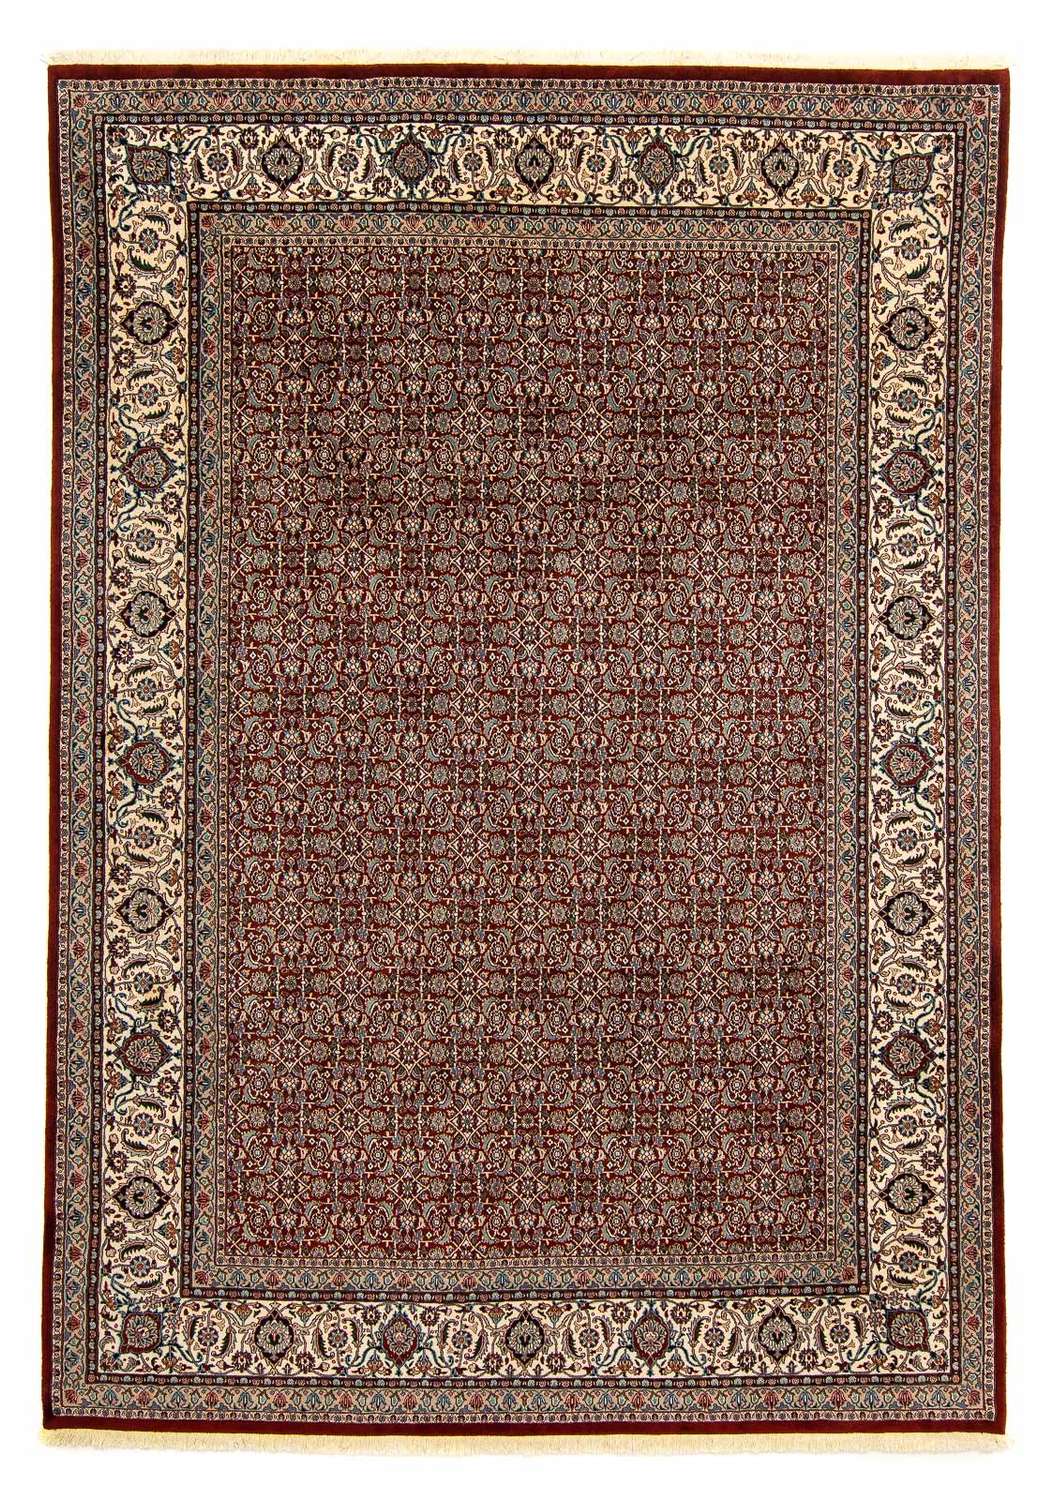 Tapete Persa - Clássico - 342 x 244 cm - vermelho escuro